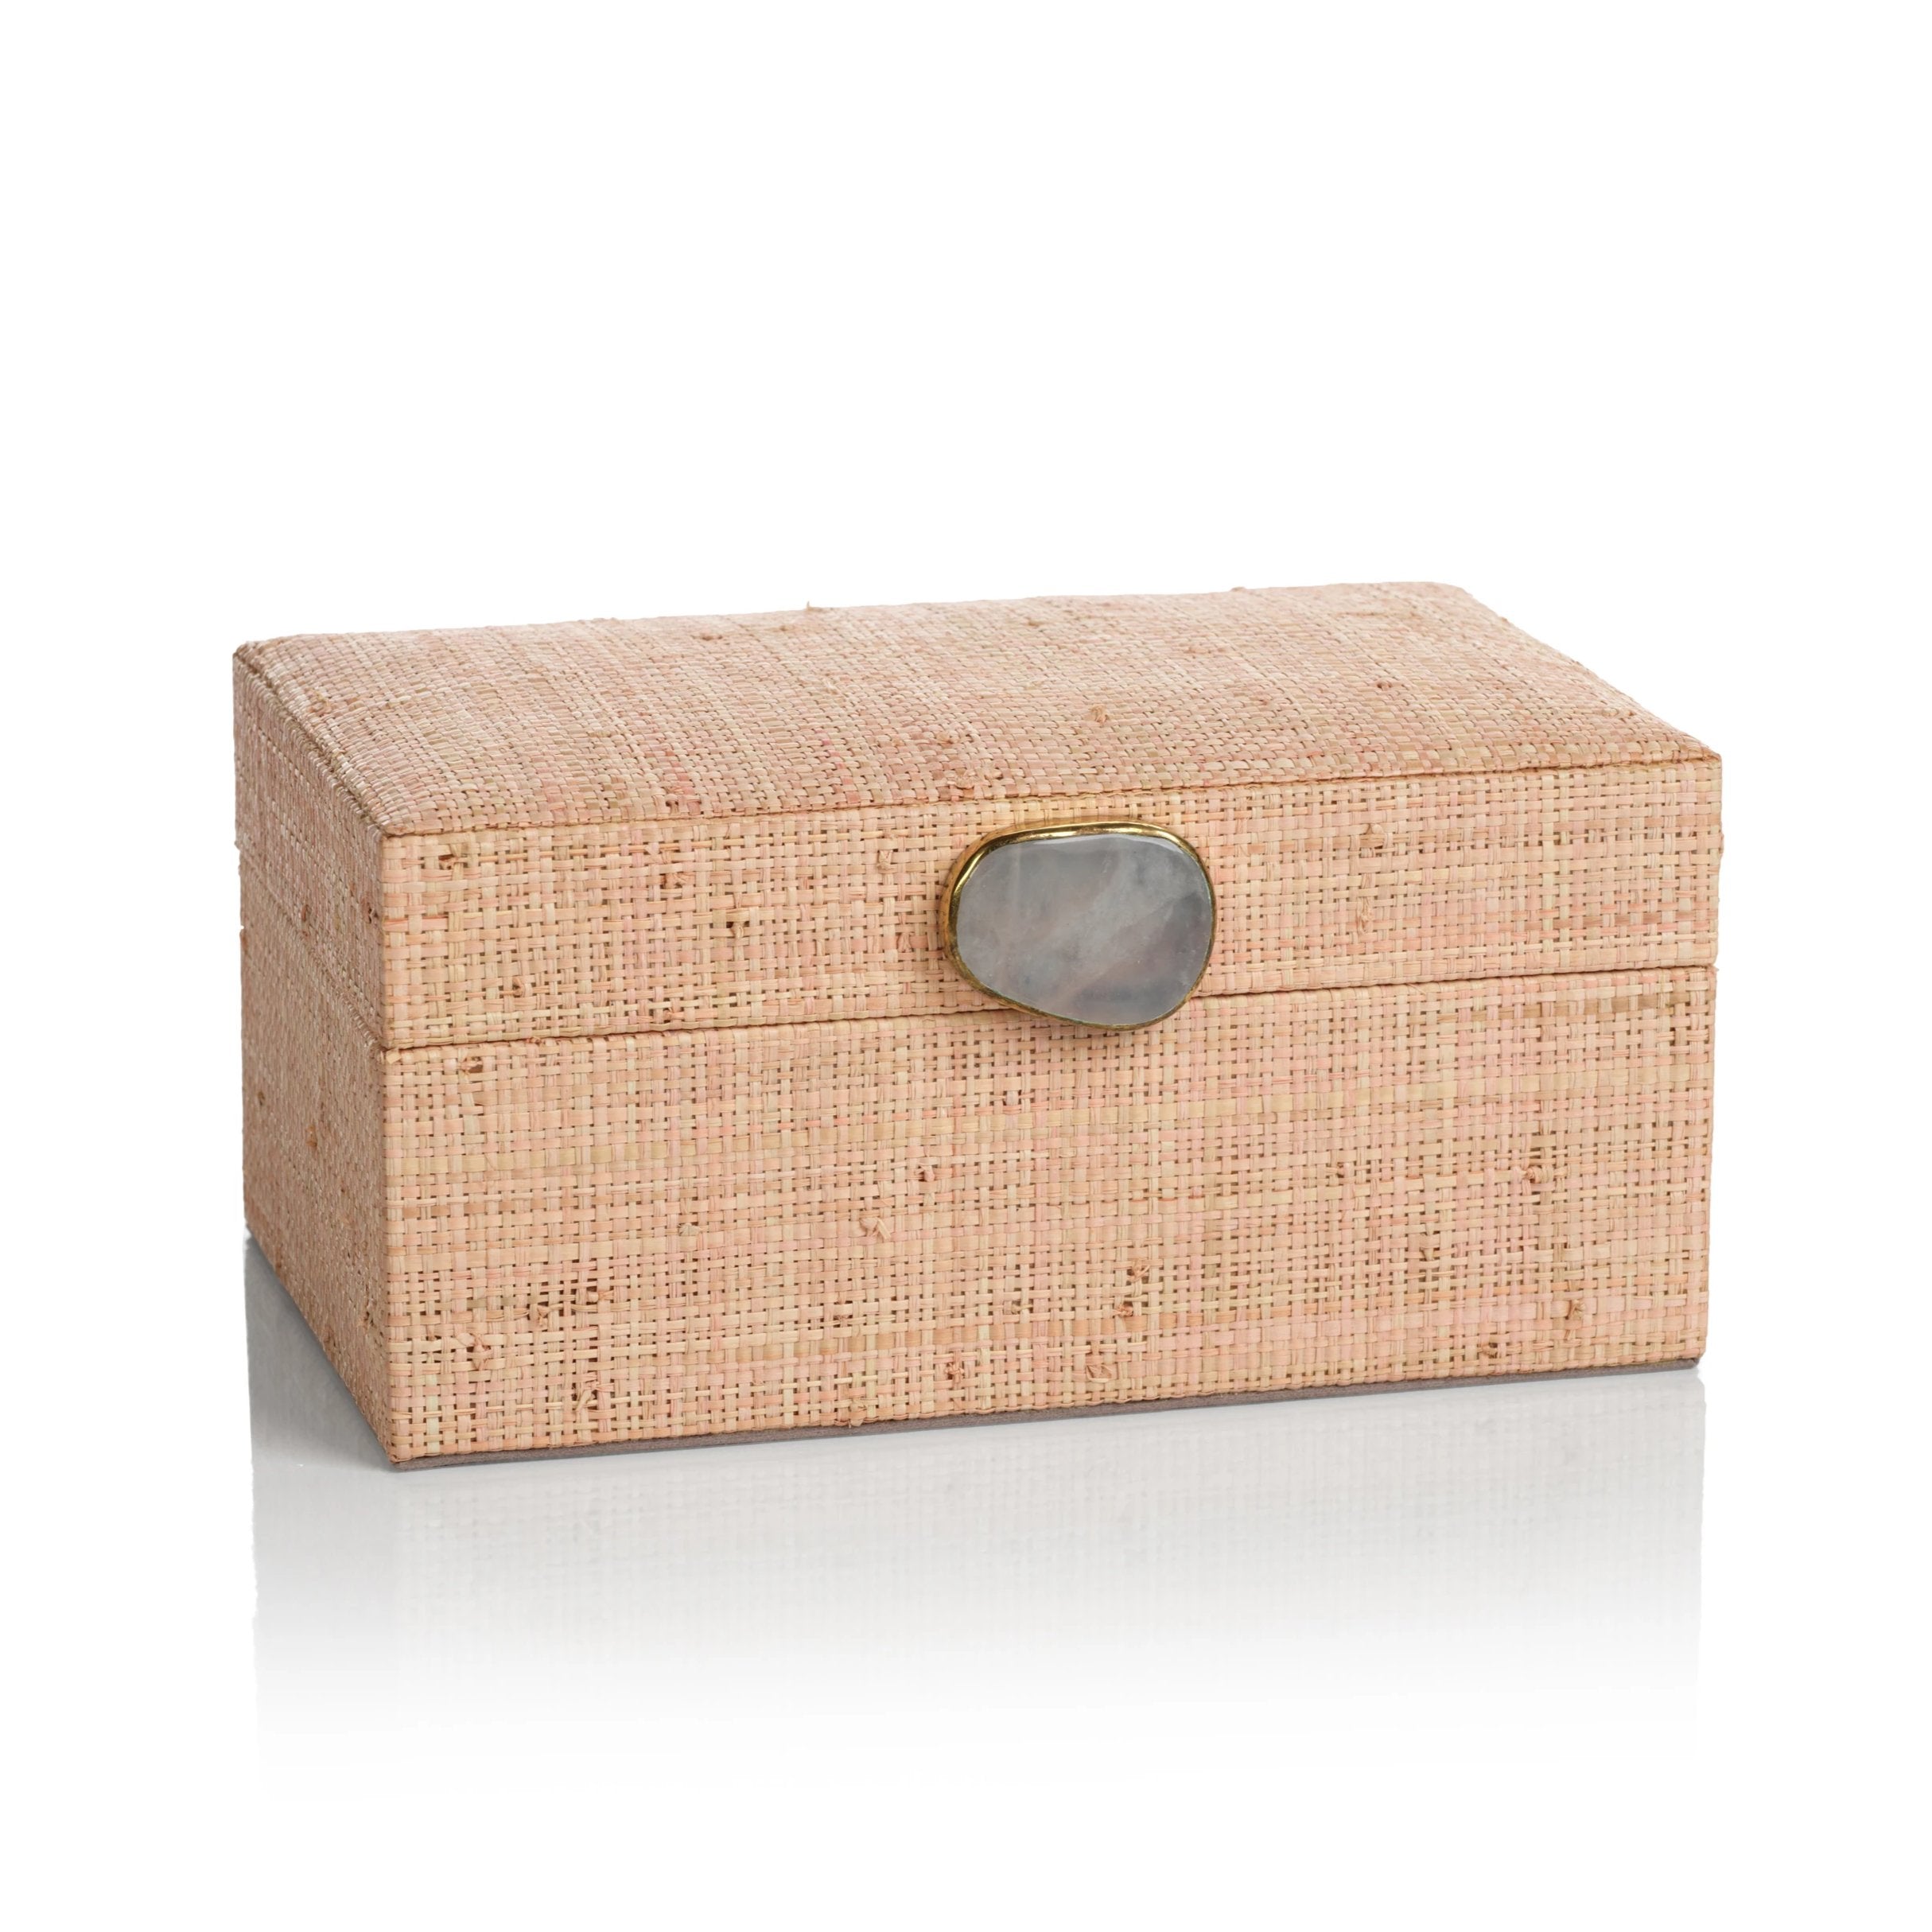 Raffia Palm Box with Stone Accent - Blush - CARLYLE AVENUE